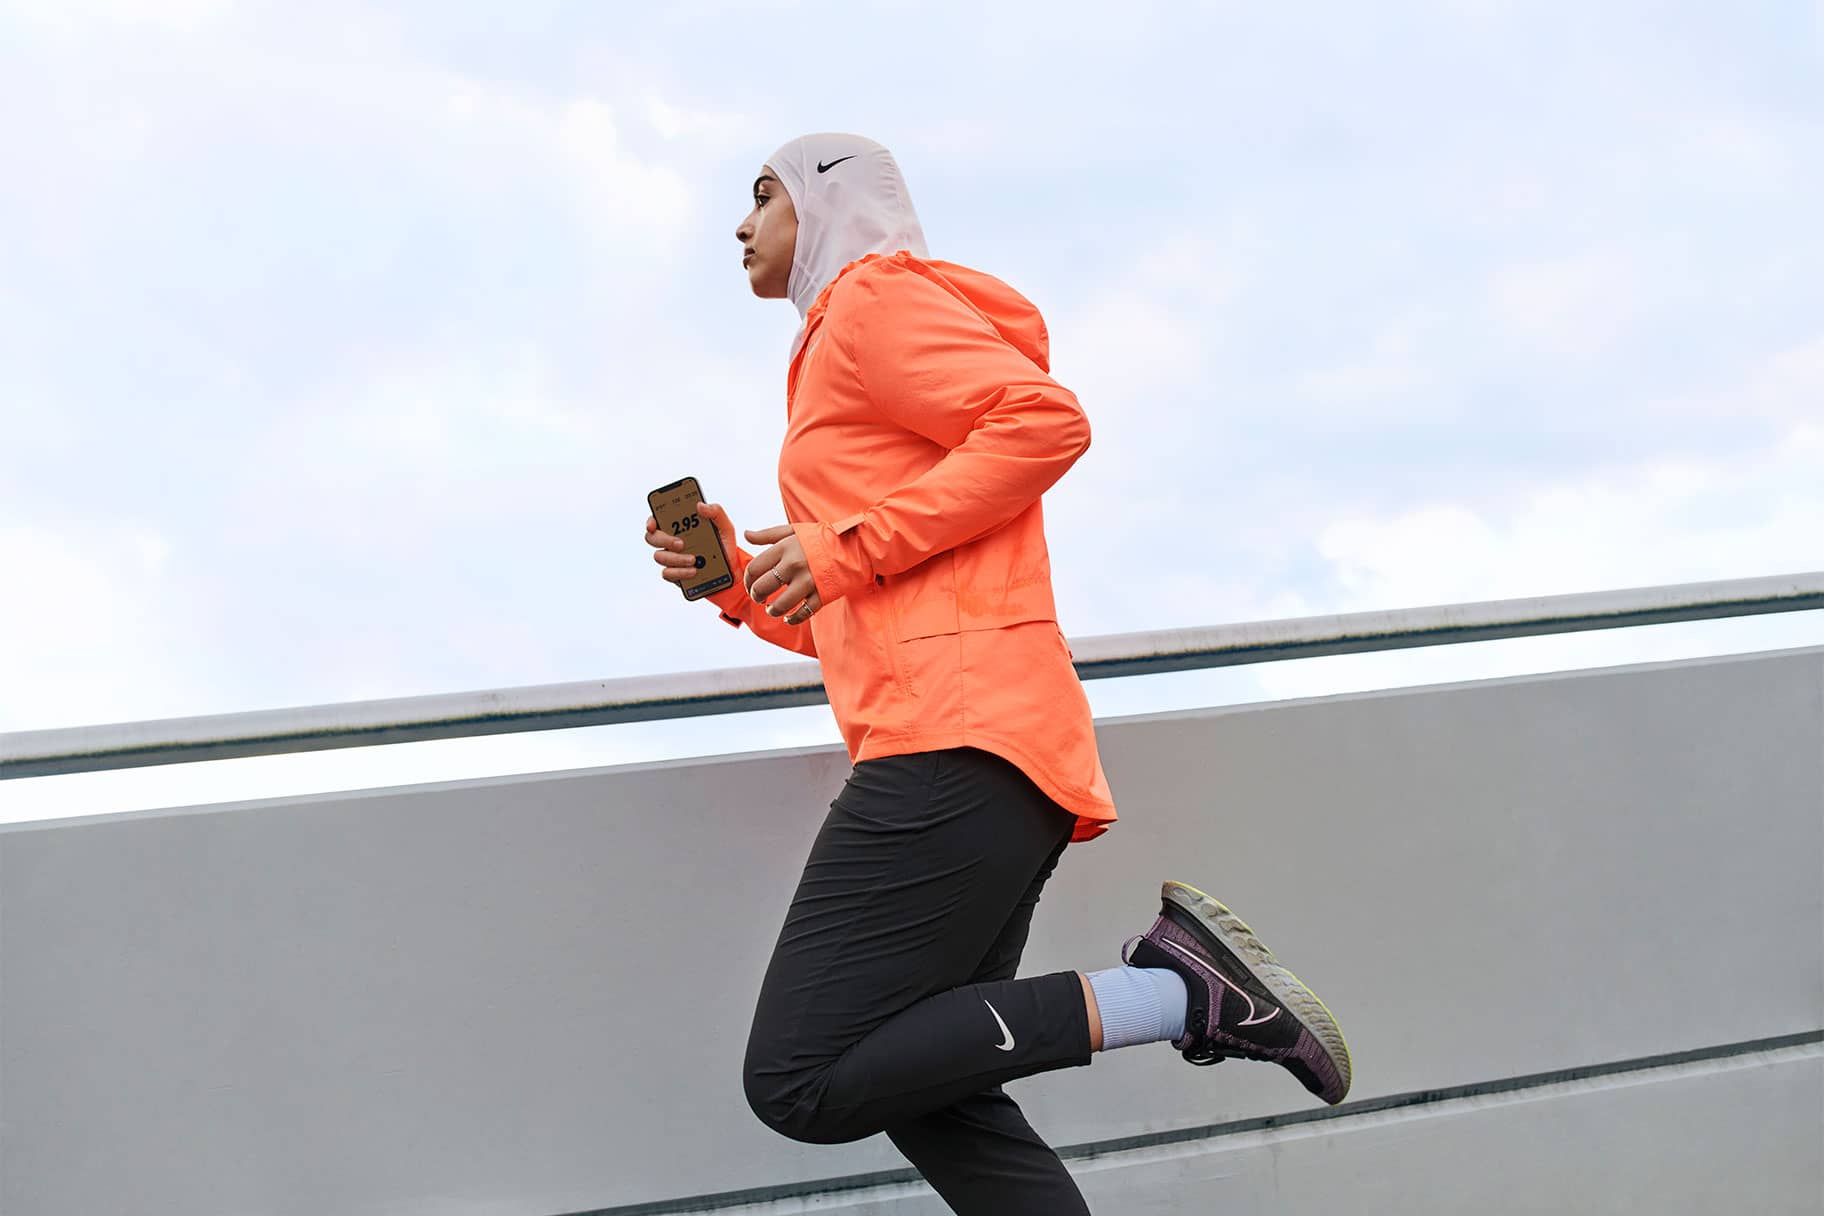 Com pot ajudar-te la Nike Run Club App a assolir els teus objectius